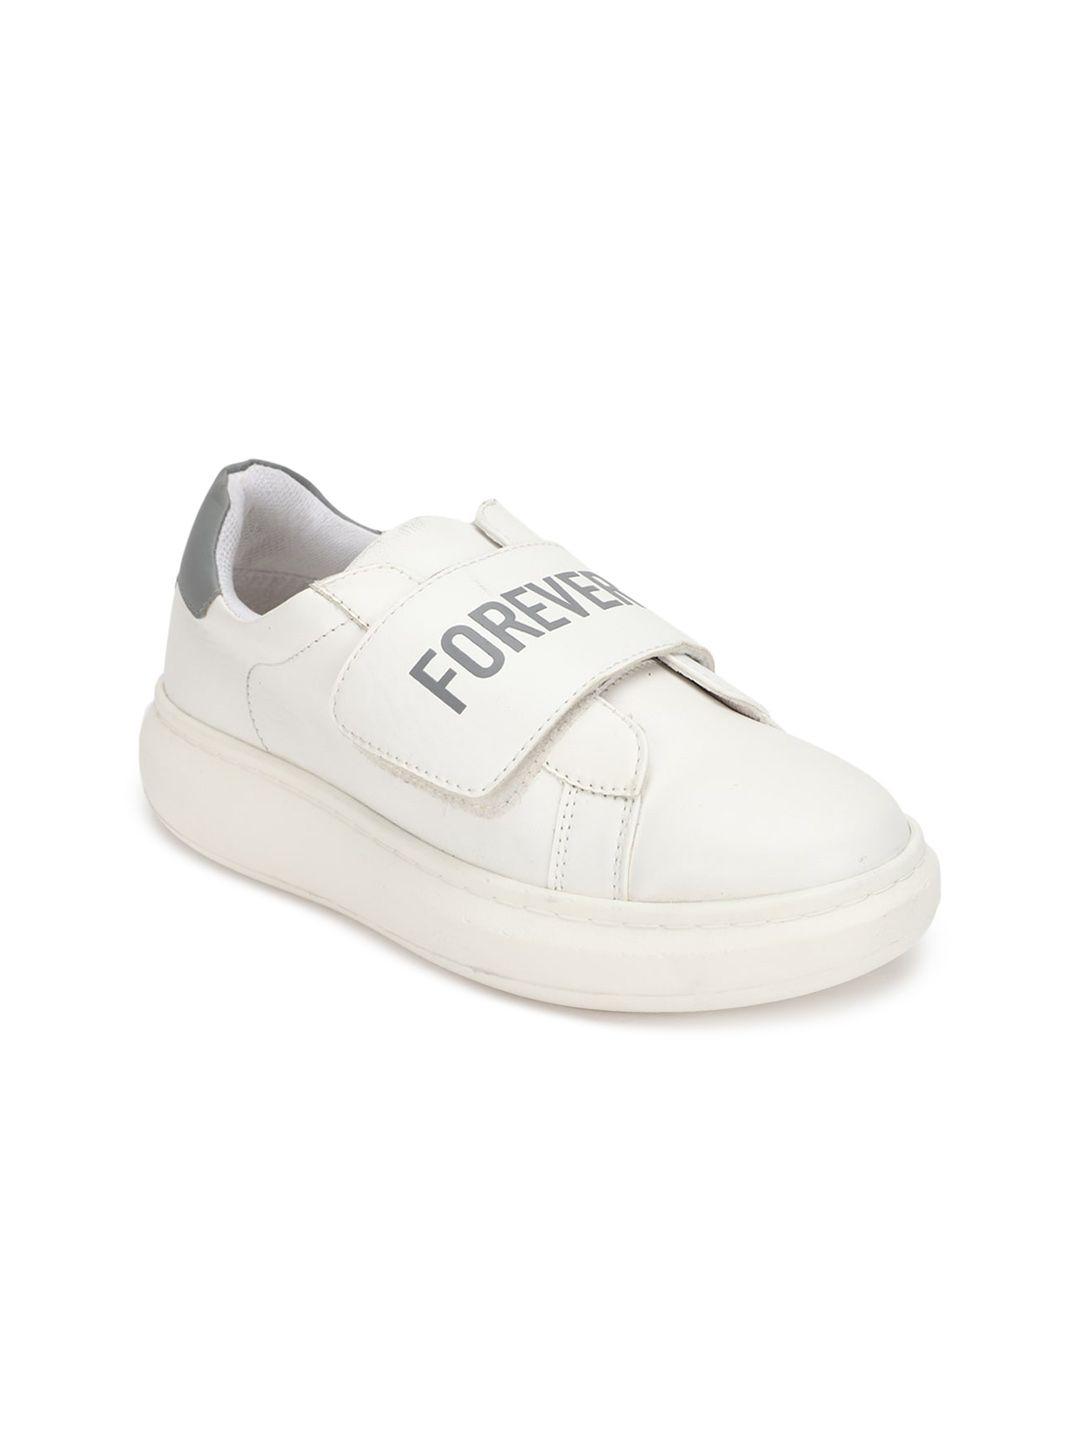 forever-21-women-white-pu-slip-on-sneakers